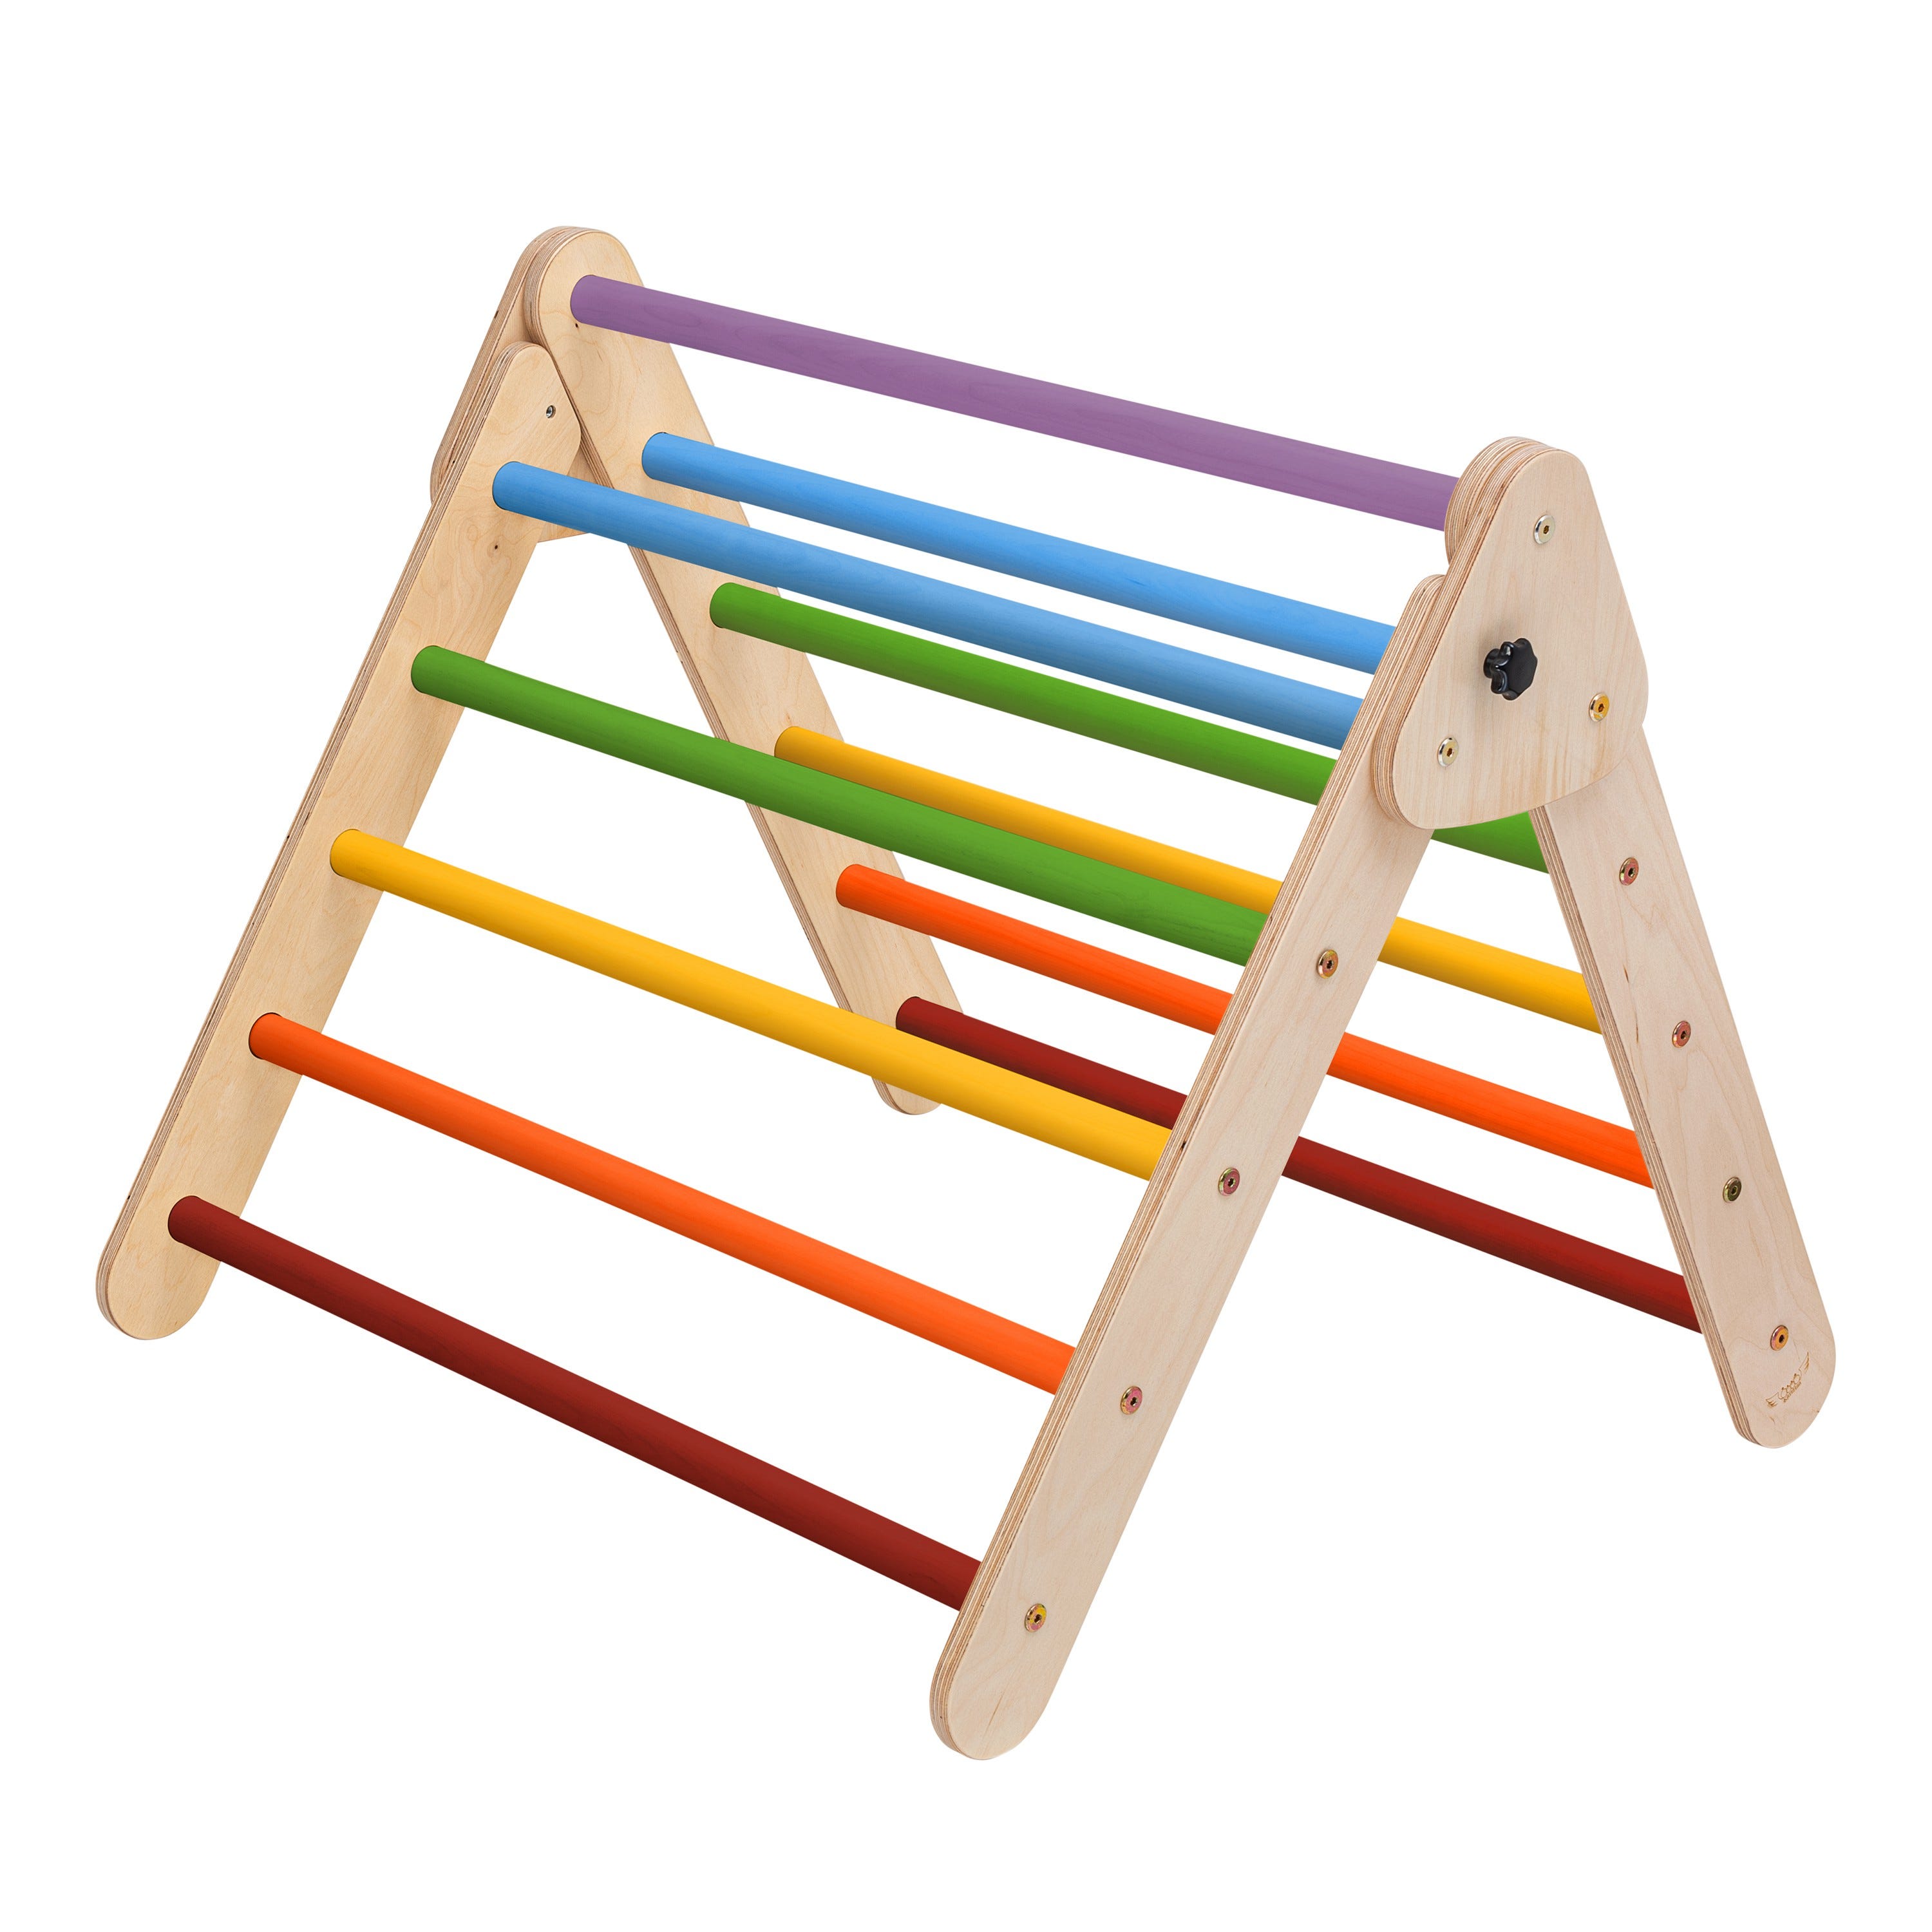 KateHaa Triangle d'escalade en bois aux couleurs de l'arc-en-ciel, Structure / Cadre d'escalade d'intérieur pour enfants, Jouets Montessori